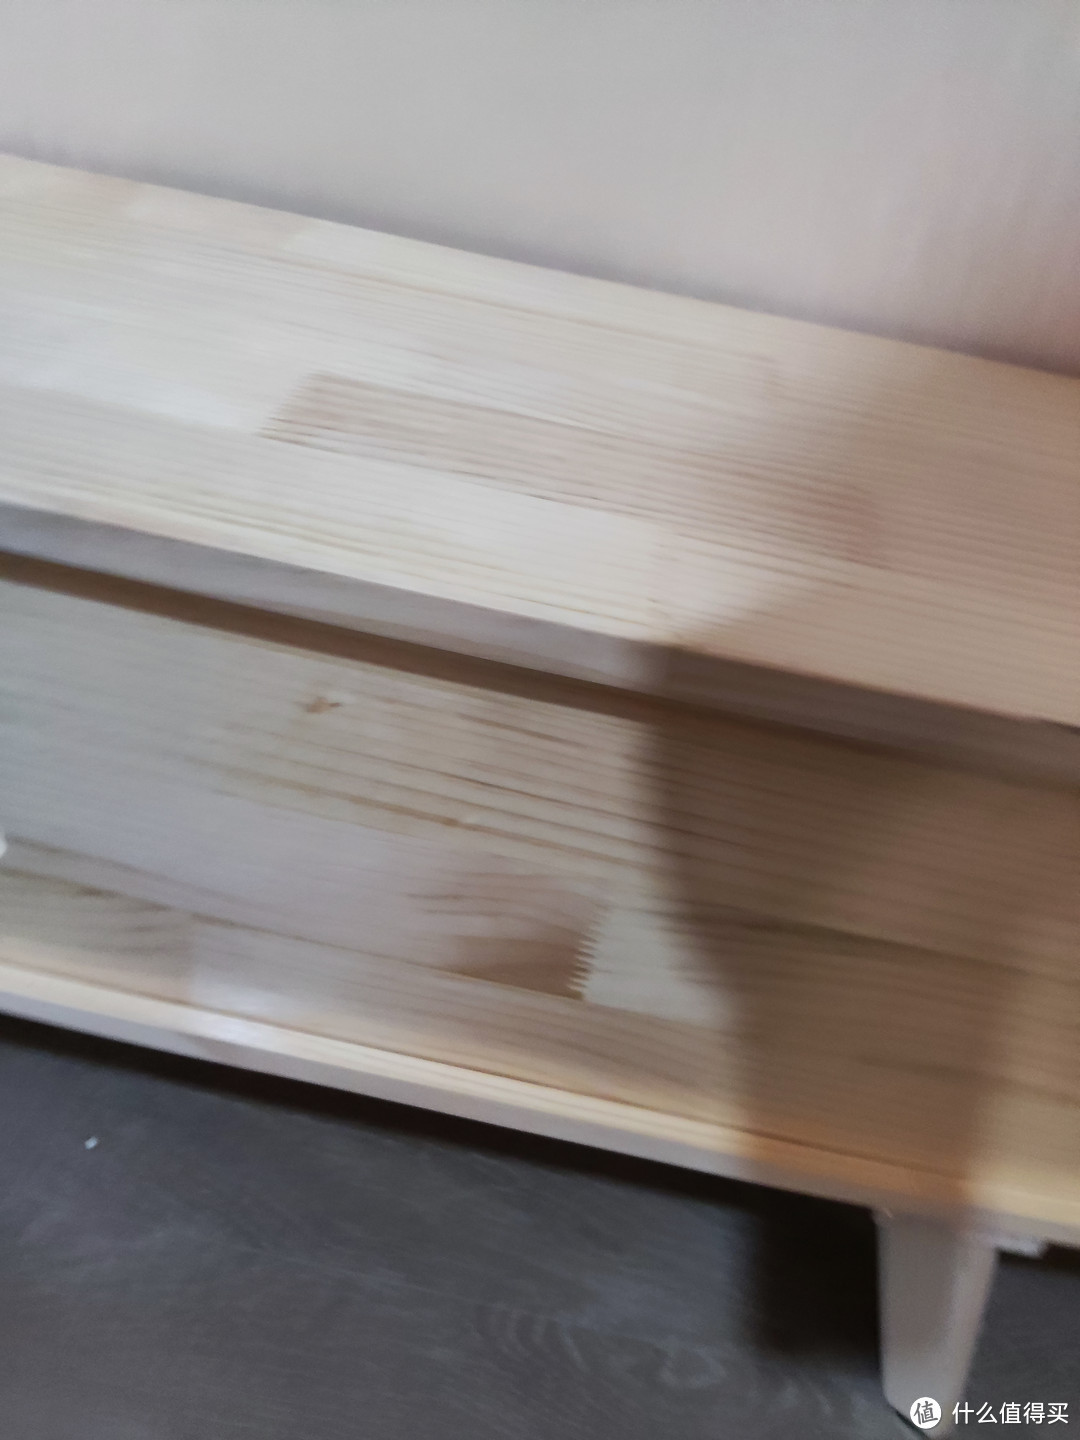 两百多的松木电视柜…最便宜的实木电器柜